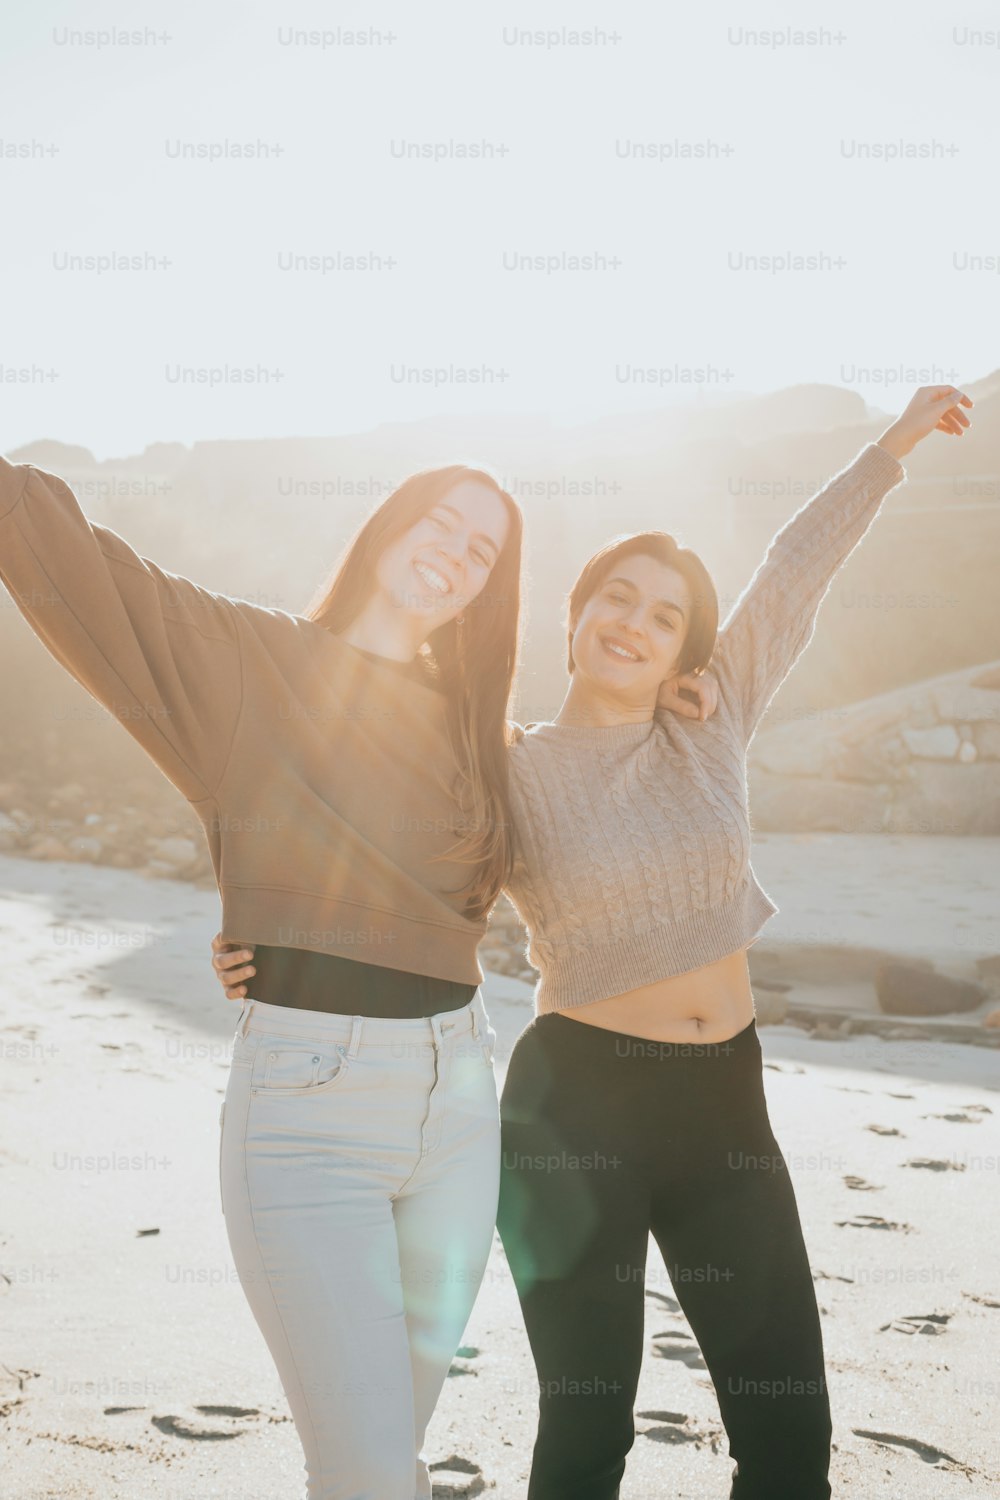 Deux femmes debout sur une plage, les bras en l’air